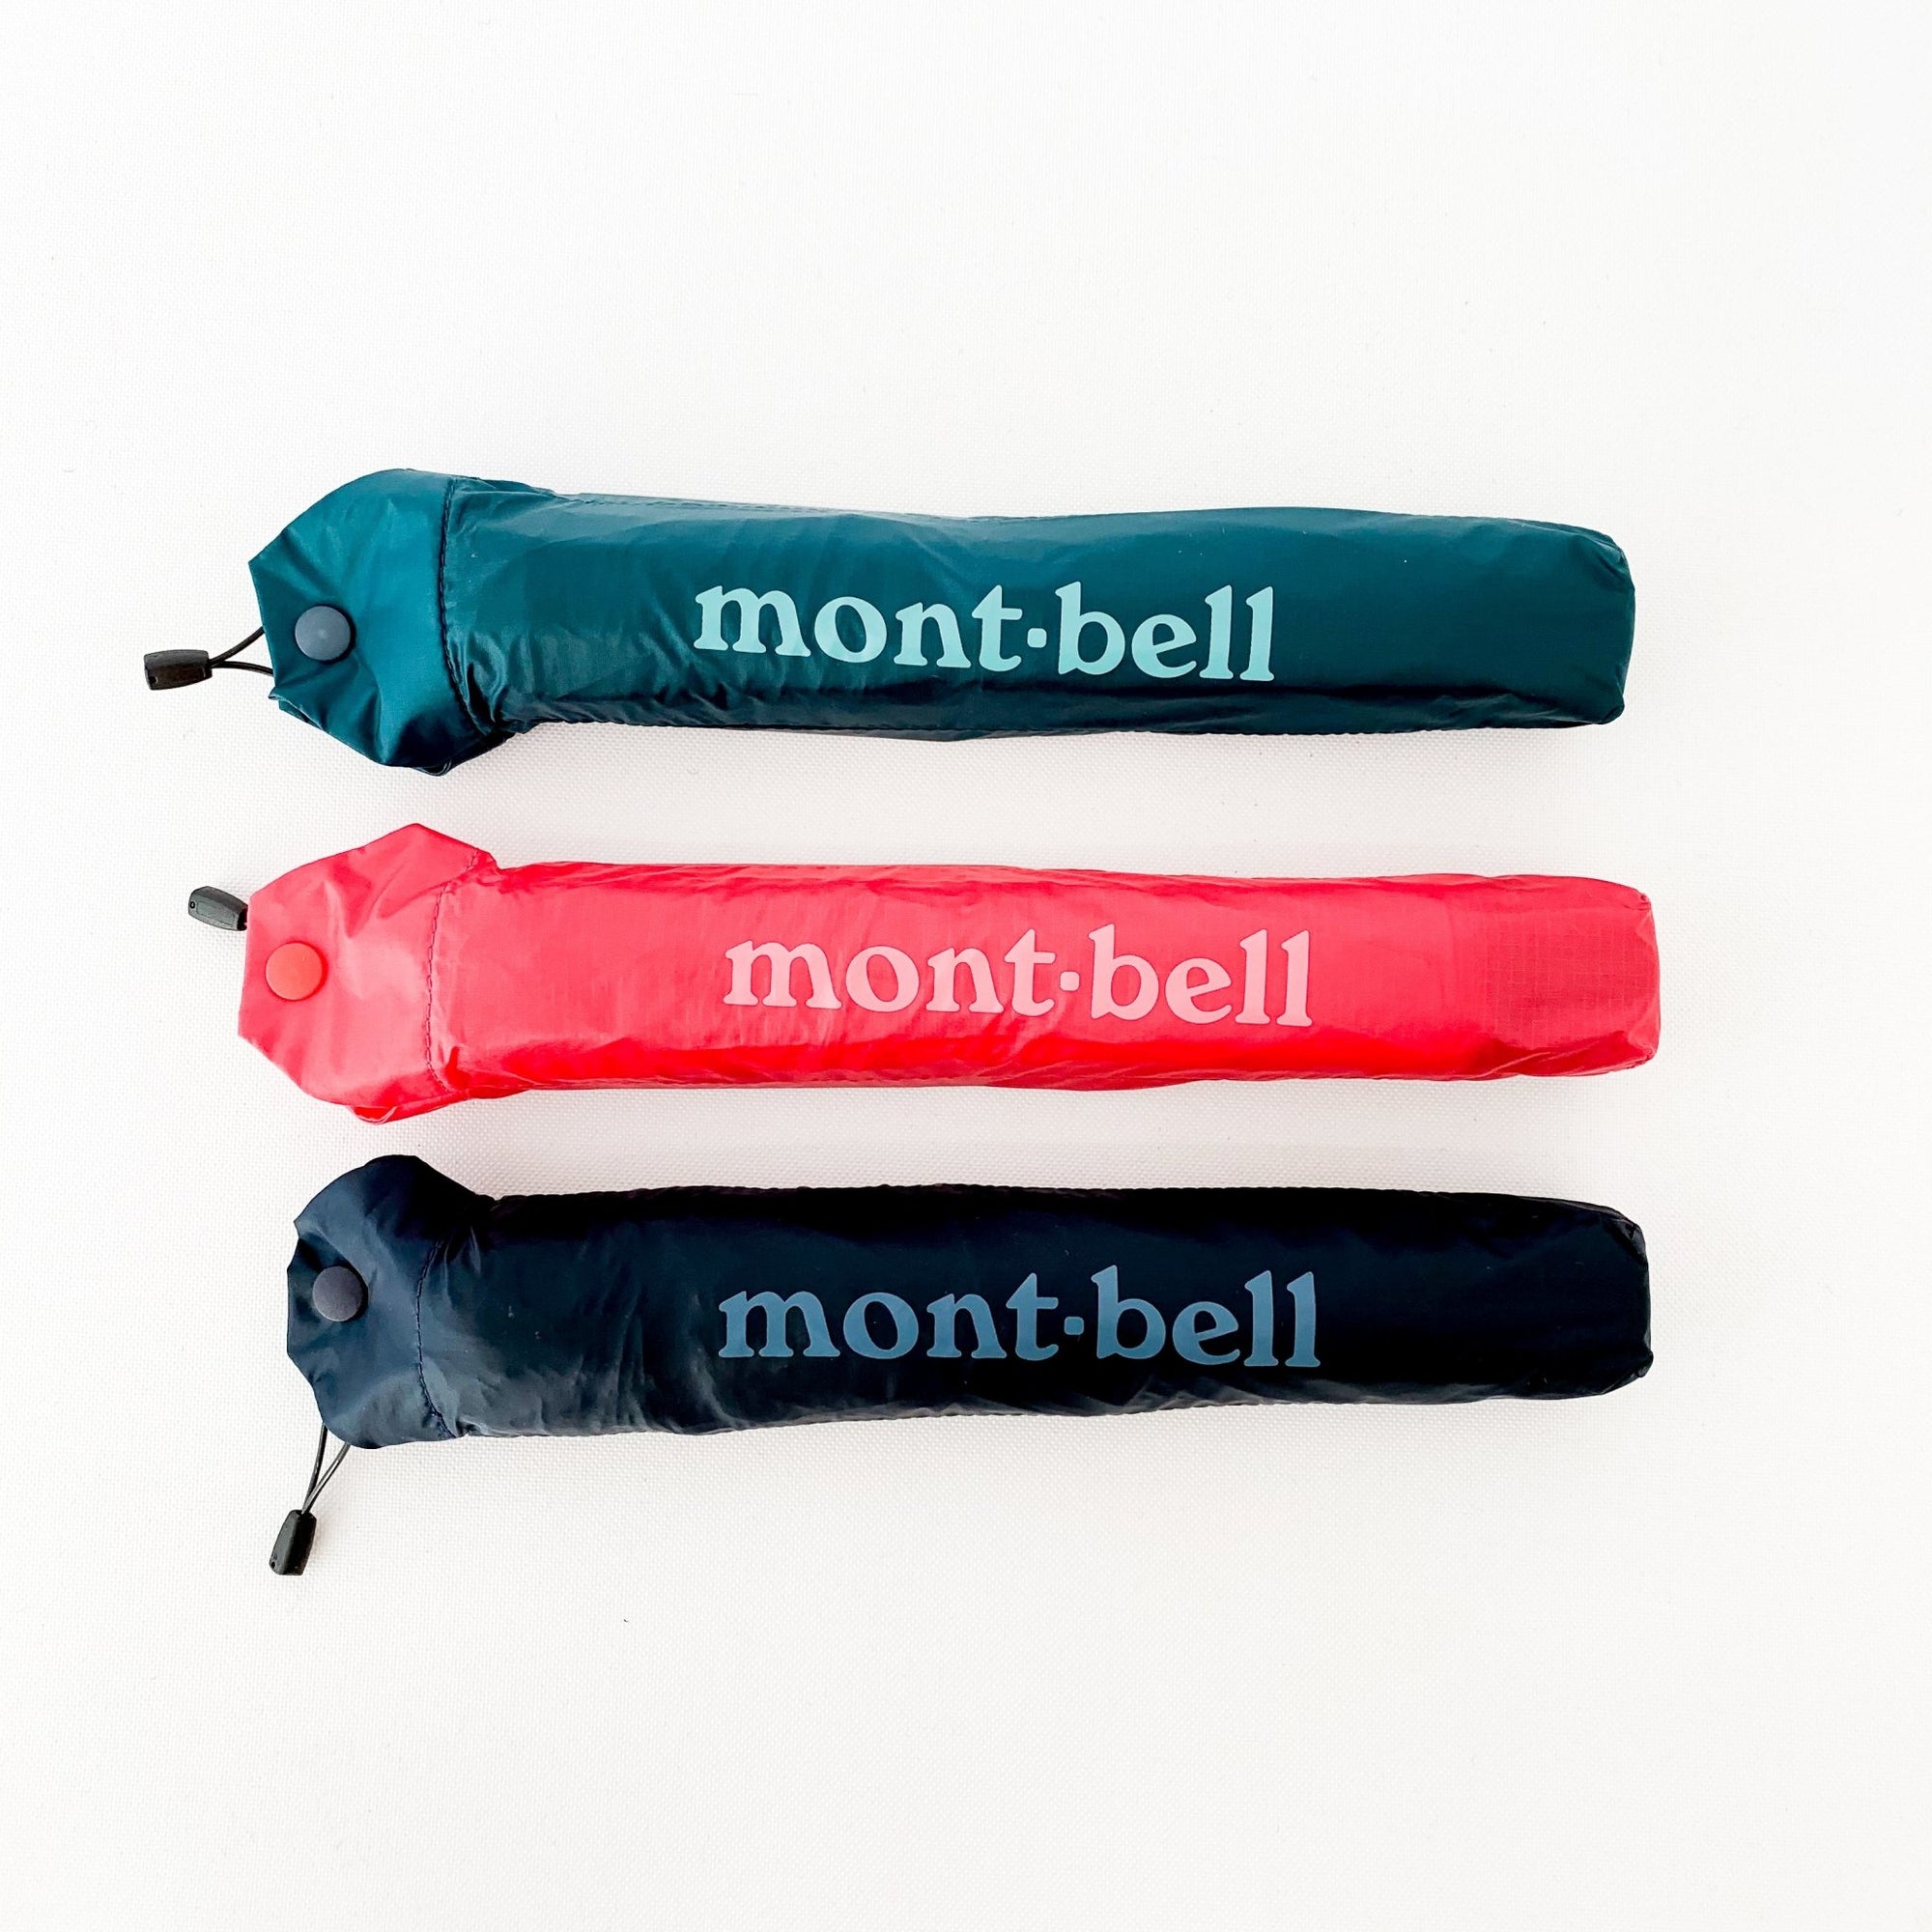 The Montbell online store on Trekkinn